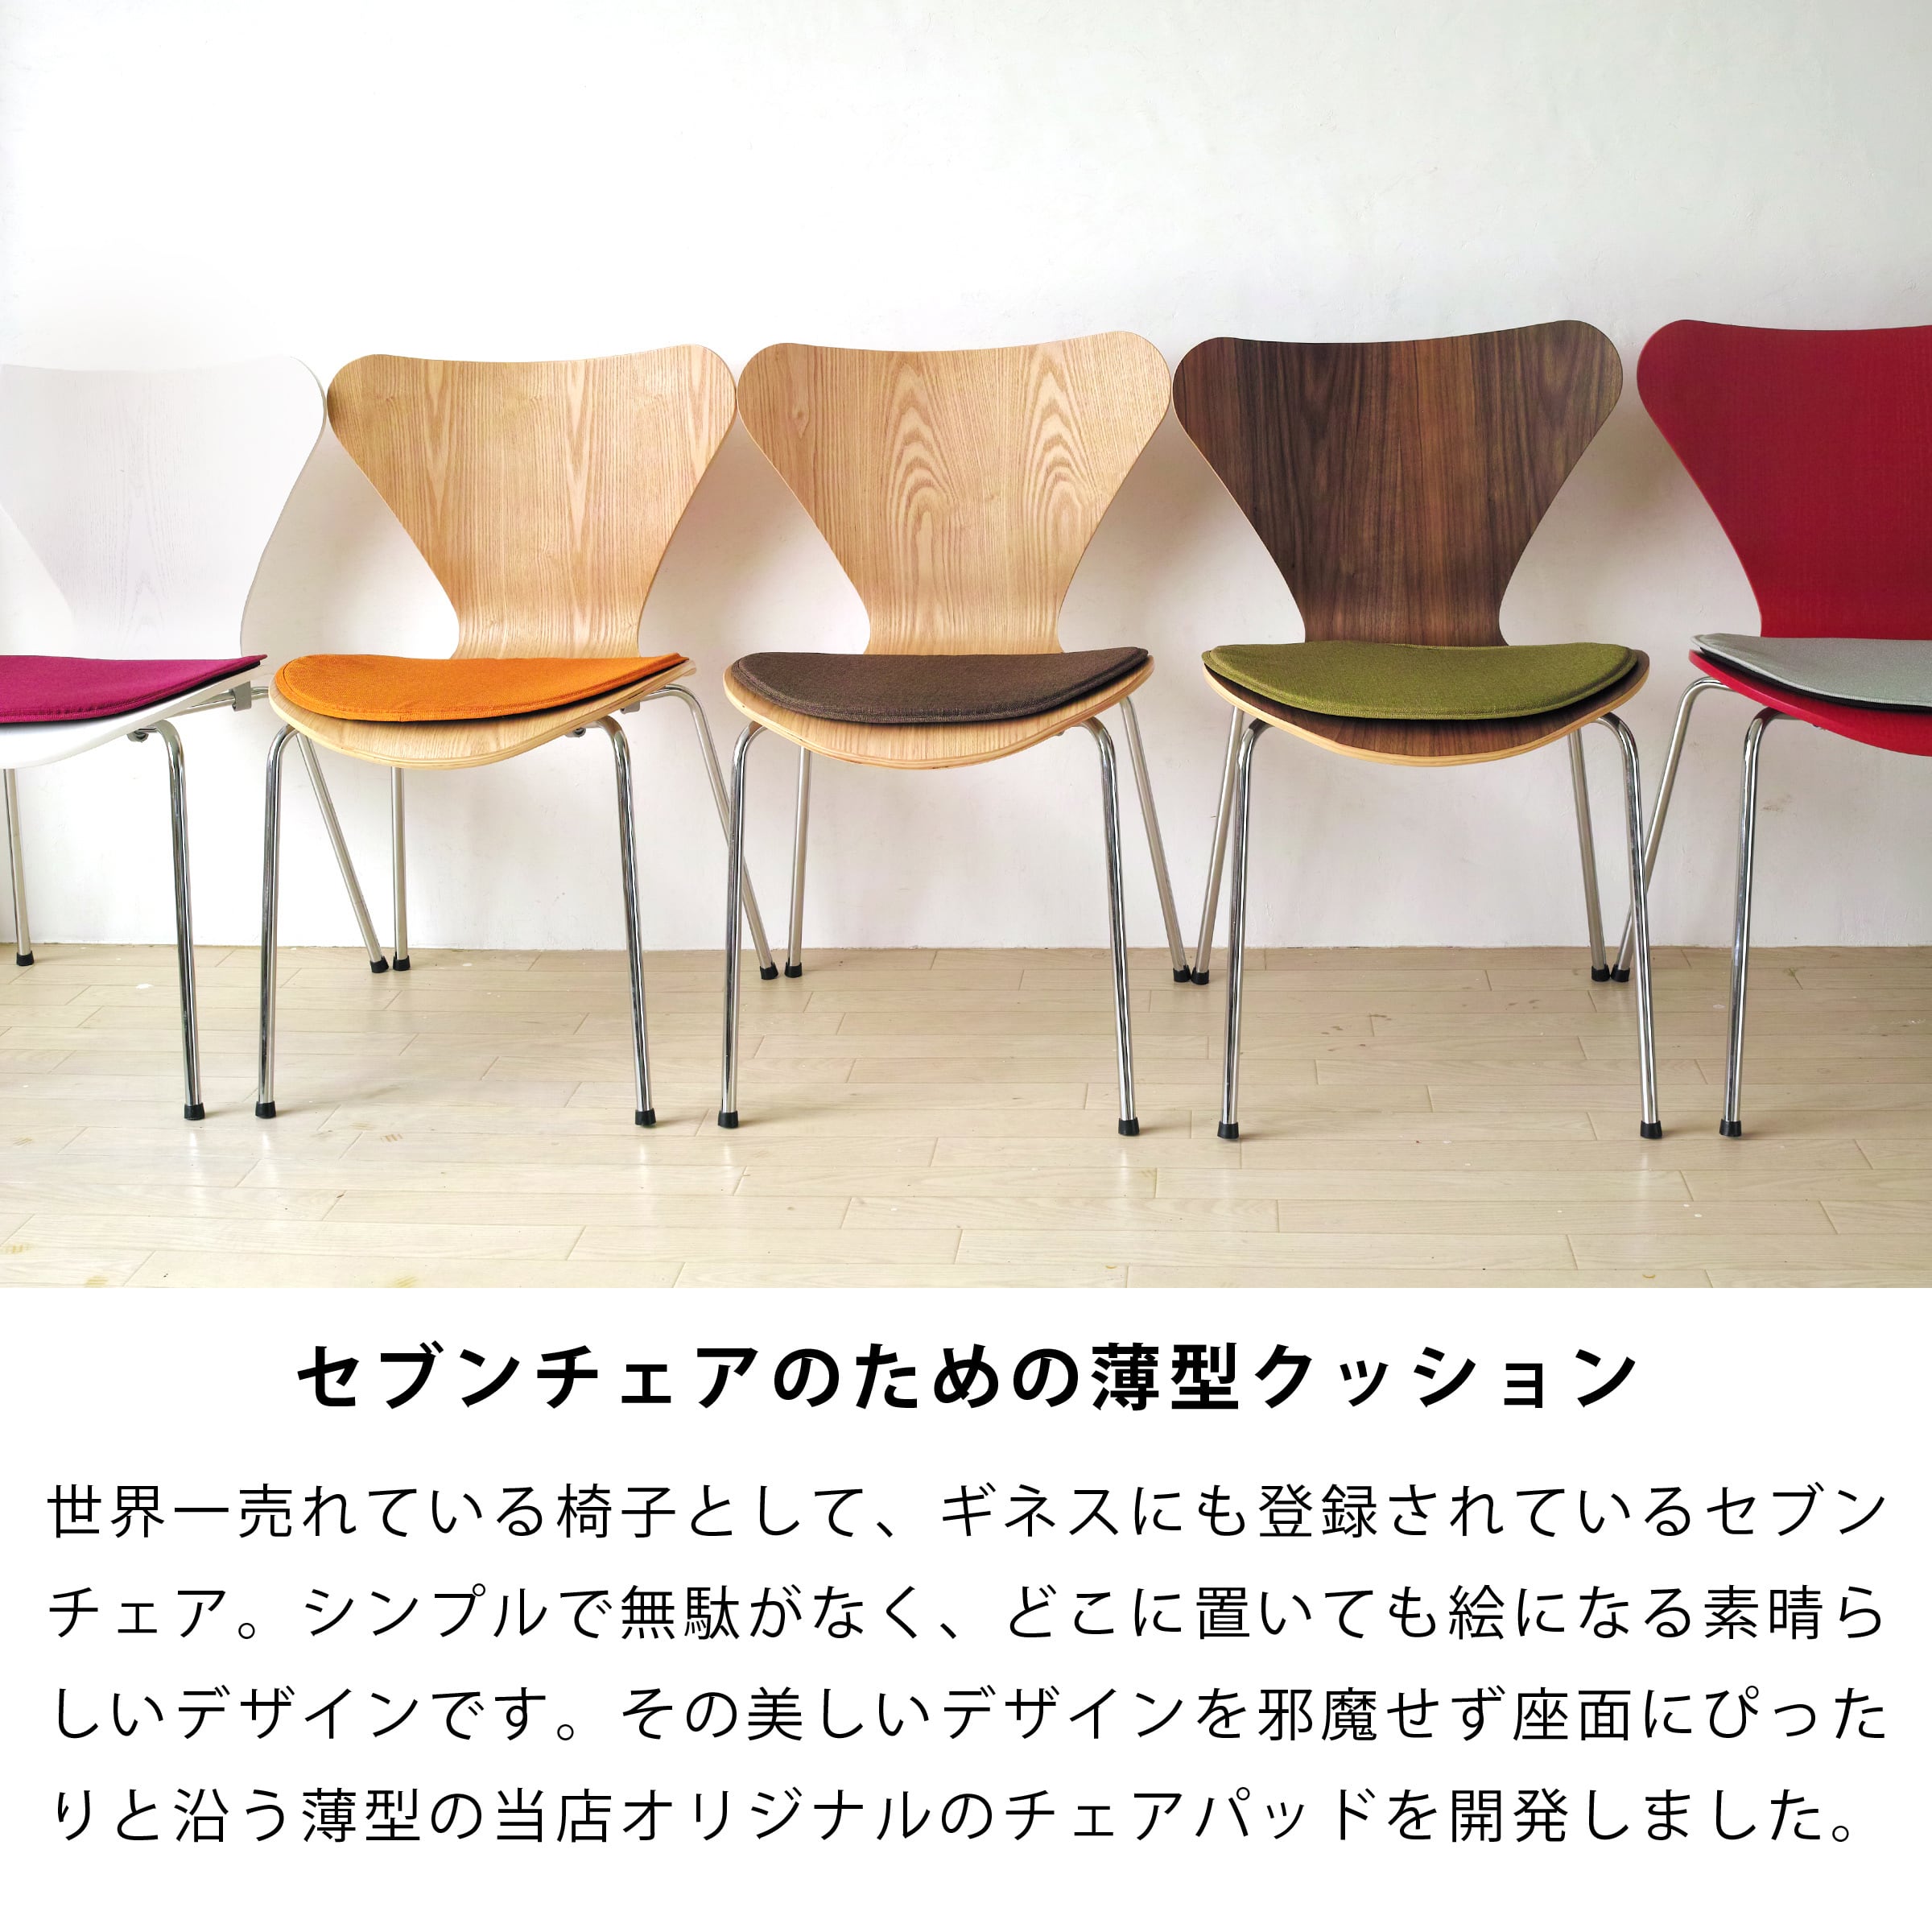 特販 クッション製ウレタンフォーム布製椅子 | barstoolvillage.com